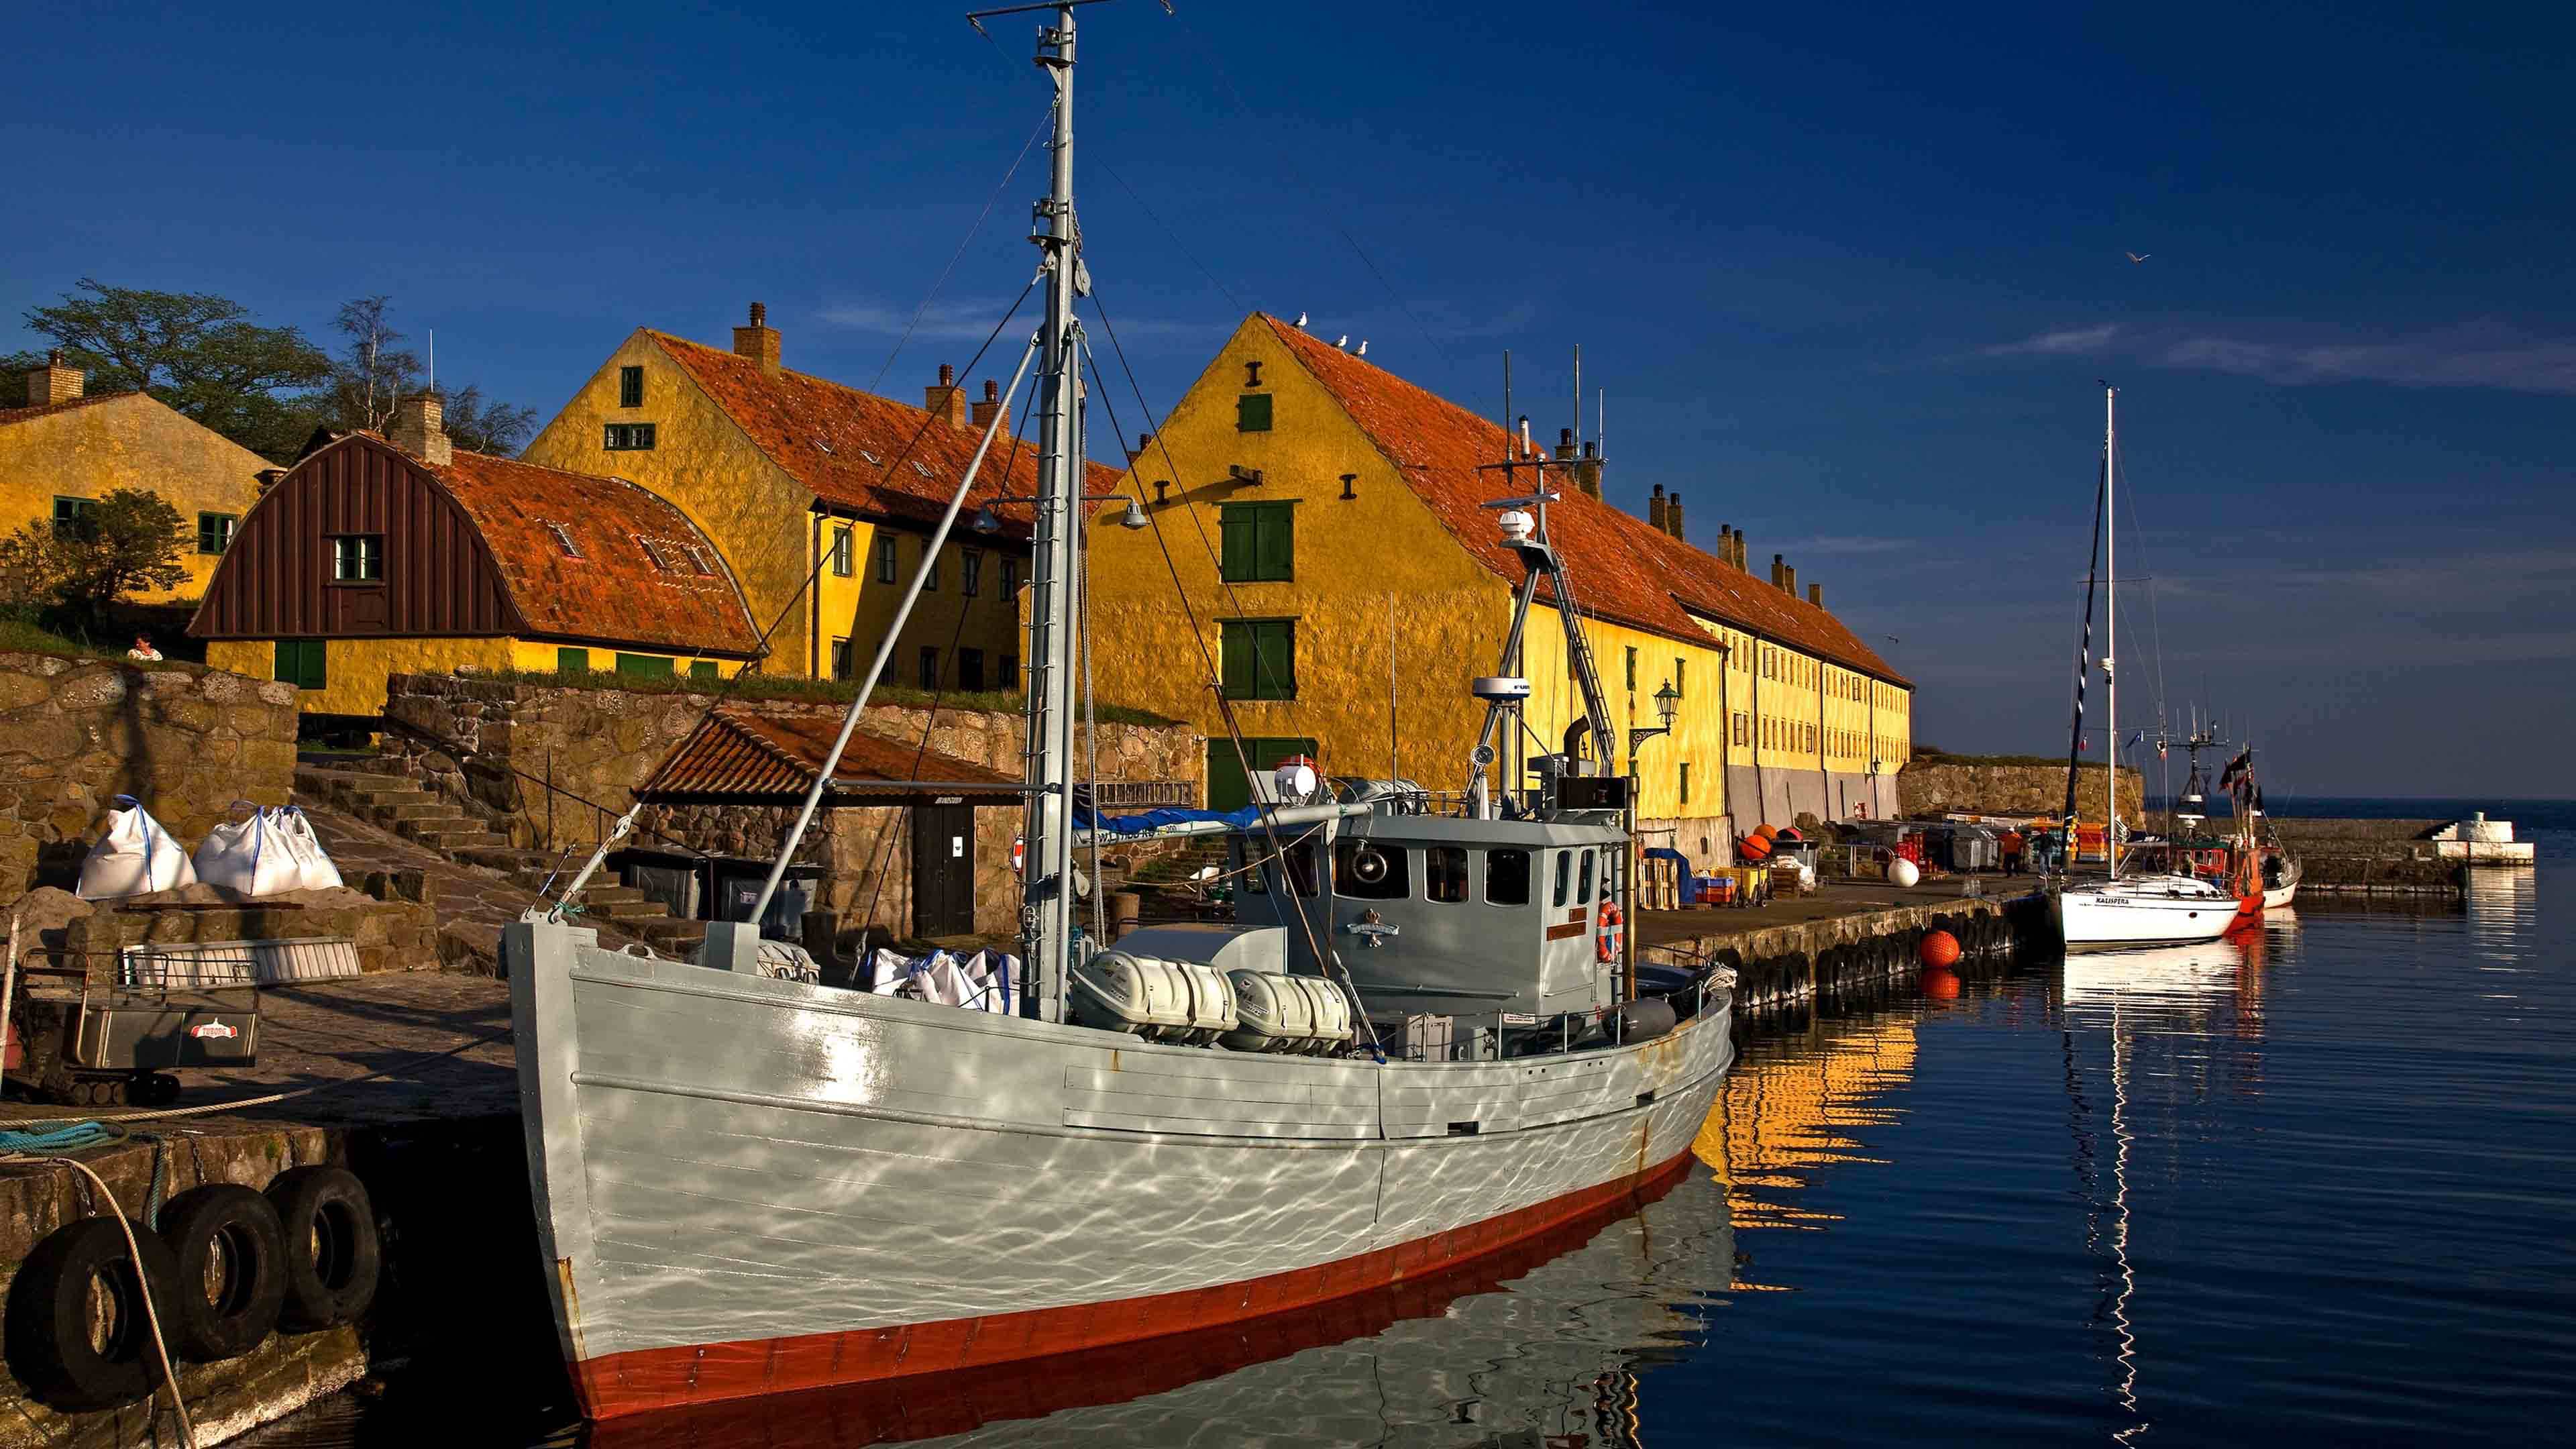 Hafen mit gelben Häusern und angelegten Booten